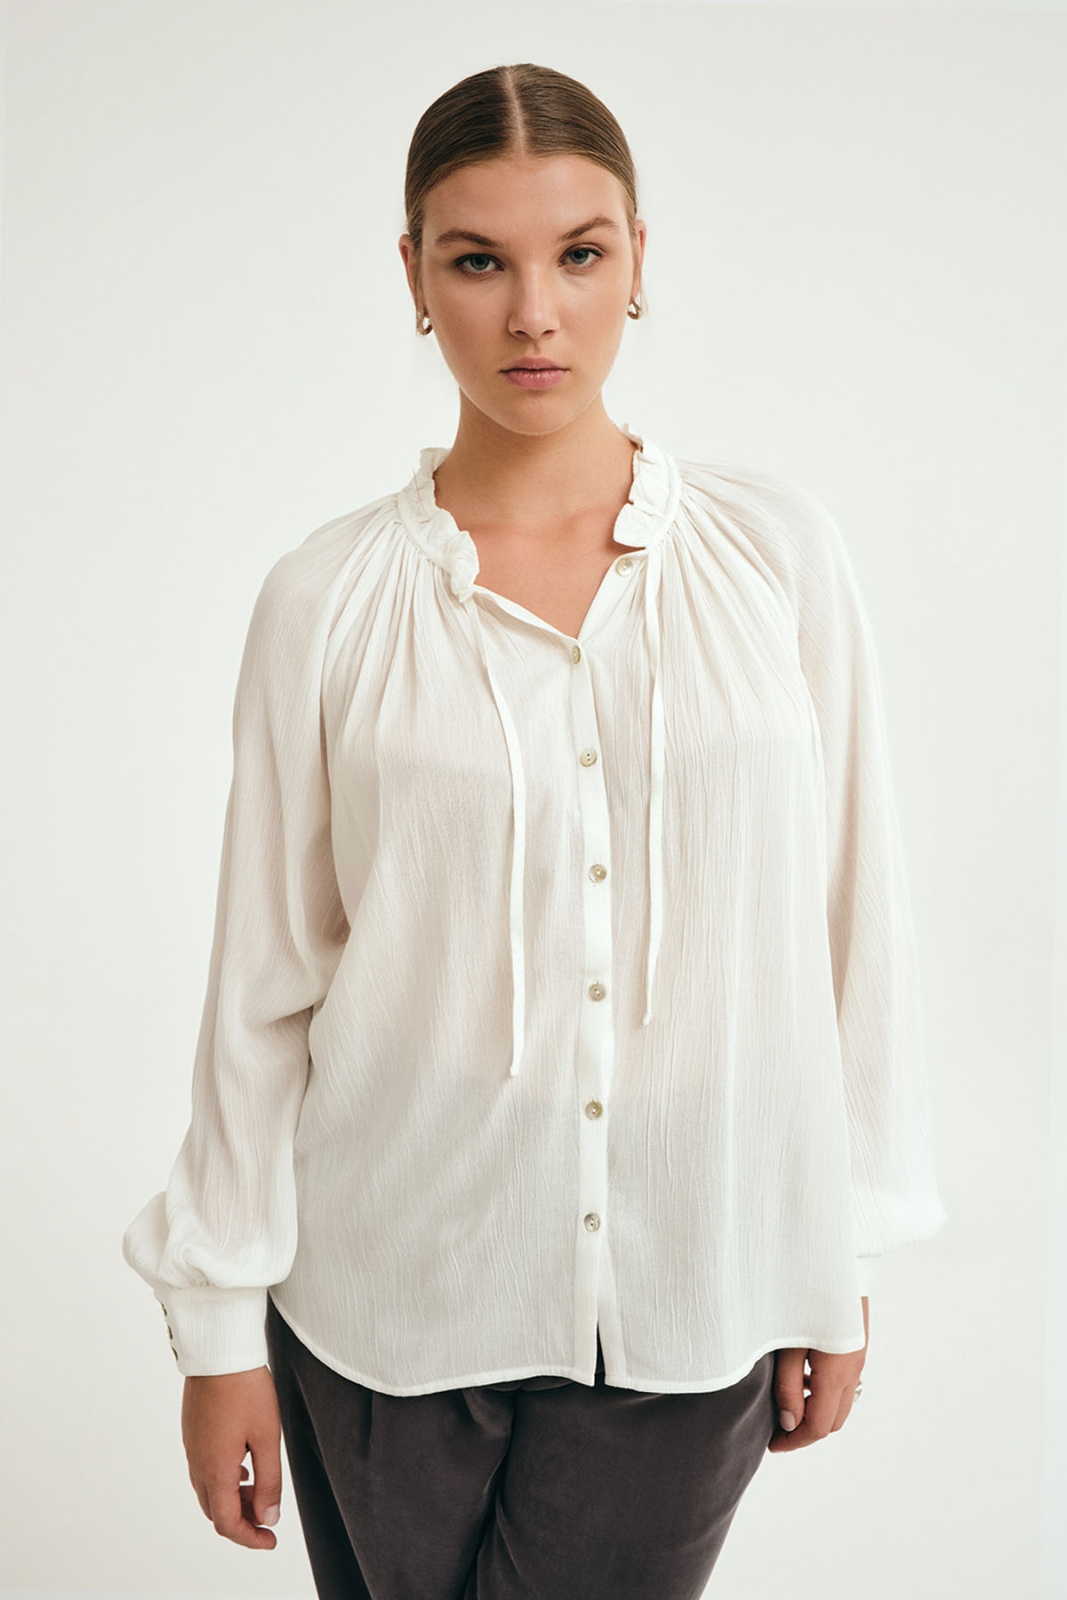 Lena Koszula Biały Koszule, bluzki, topy Elementy